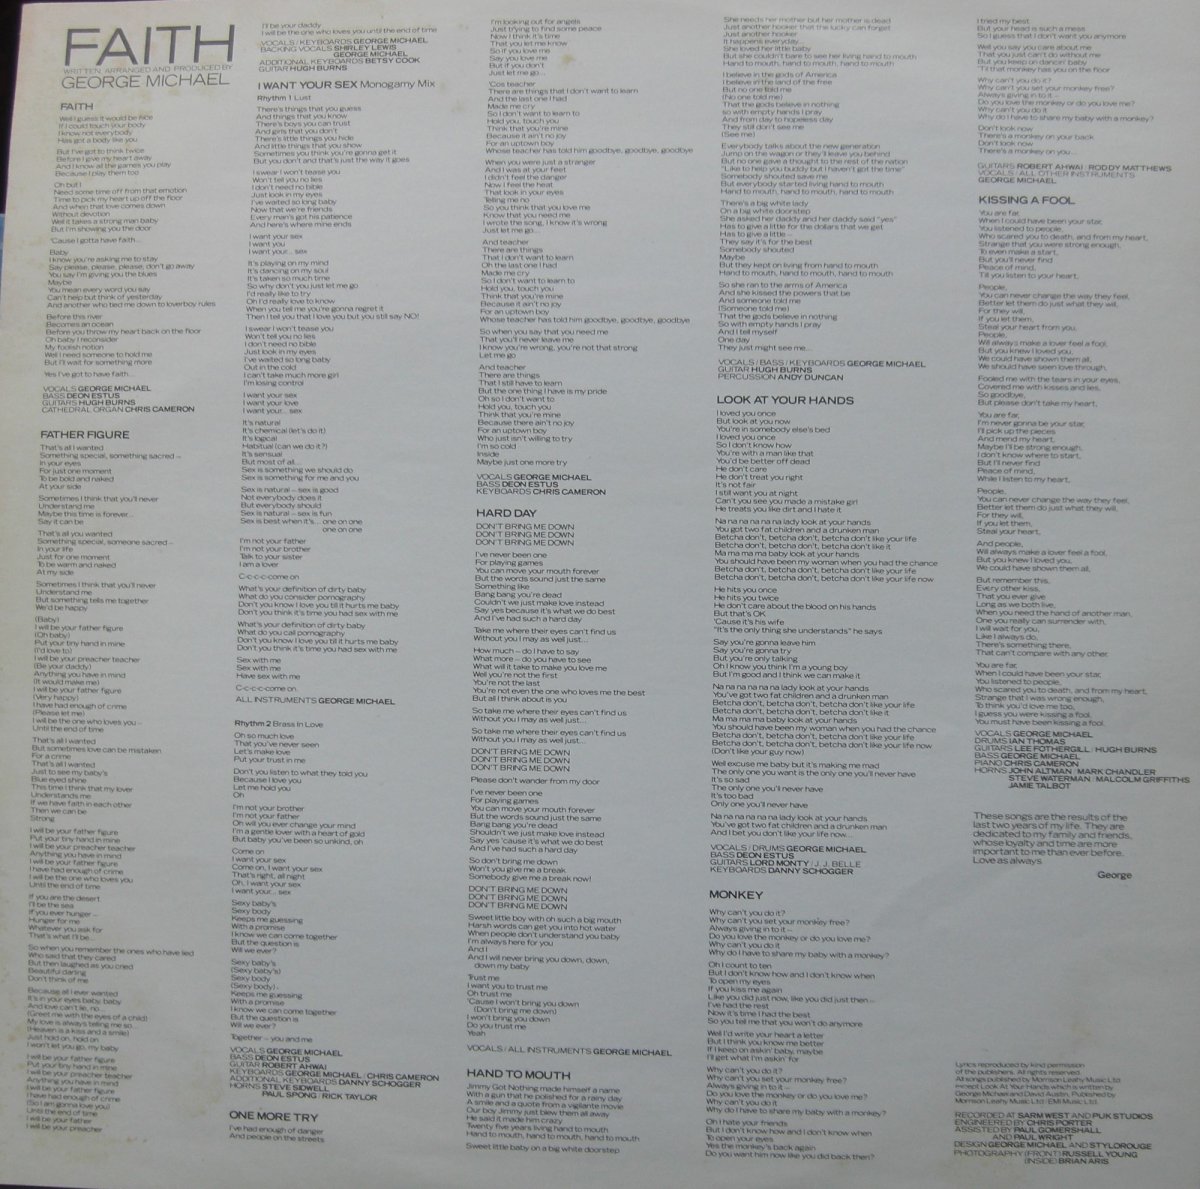 George Michael – Faith